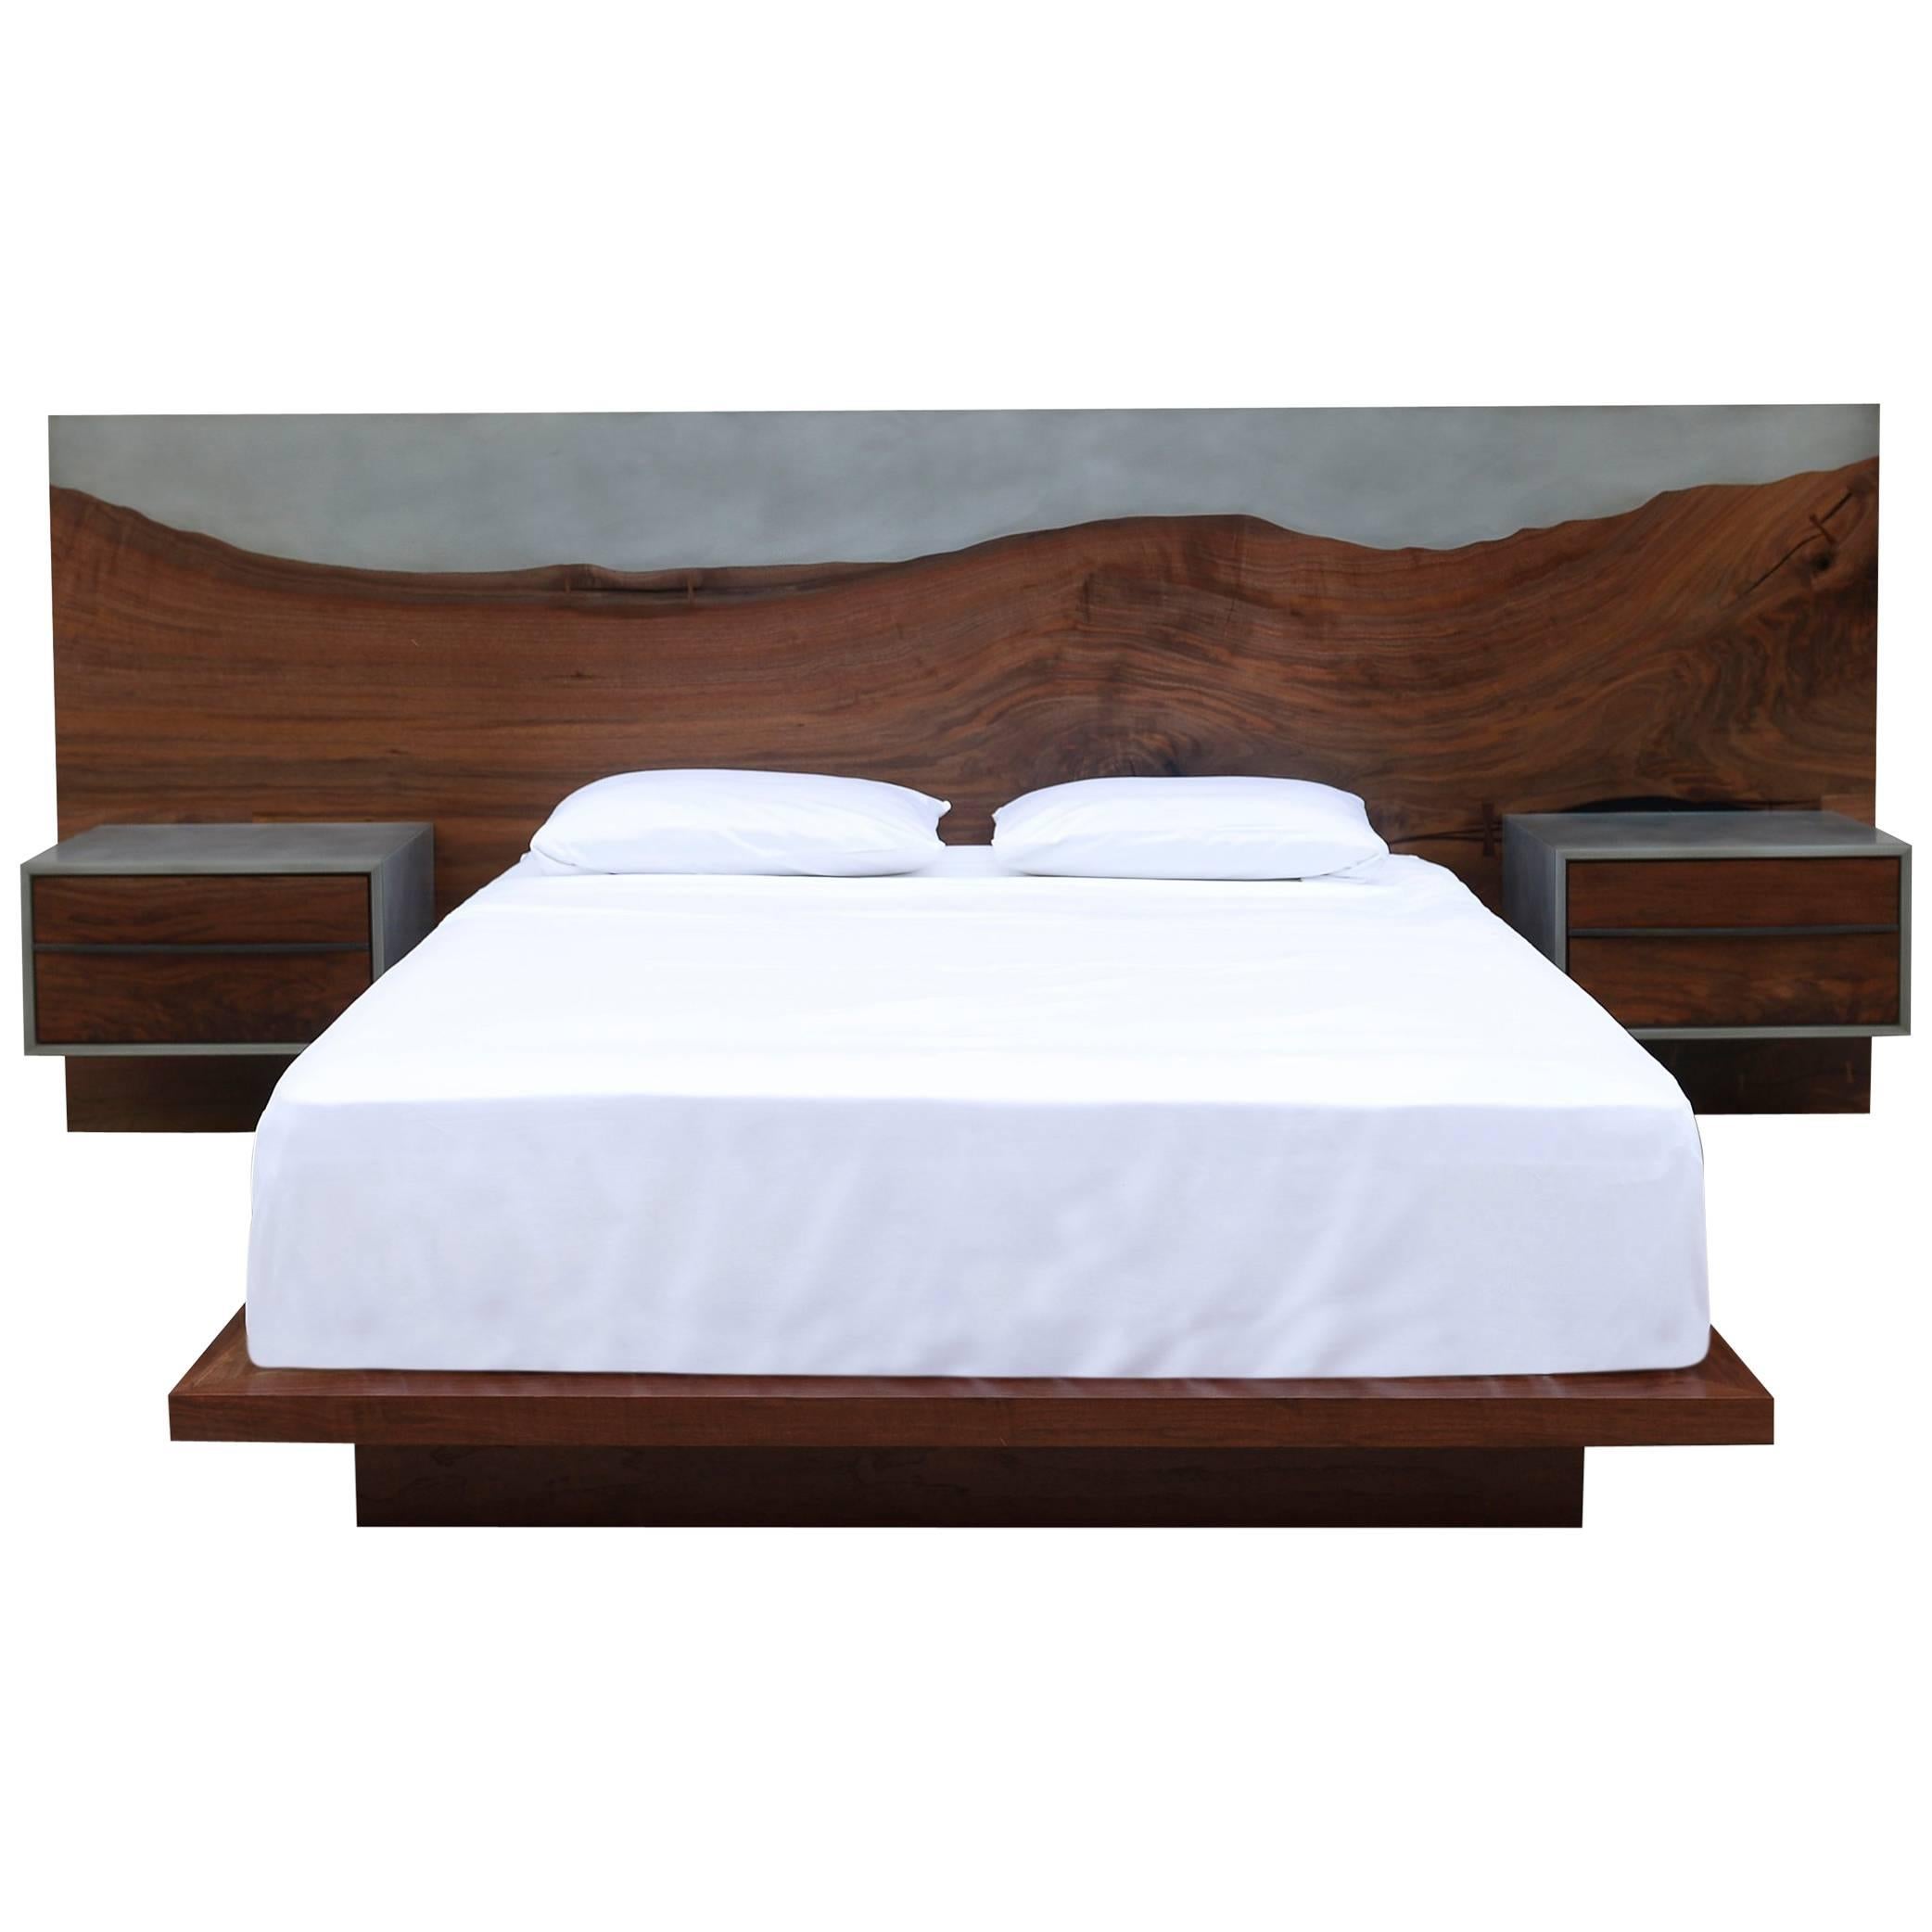 Anpassbares Nola-Bett, Holz, Metall und Harz, Queen Size